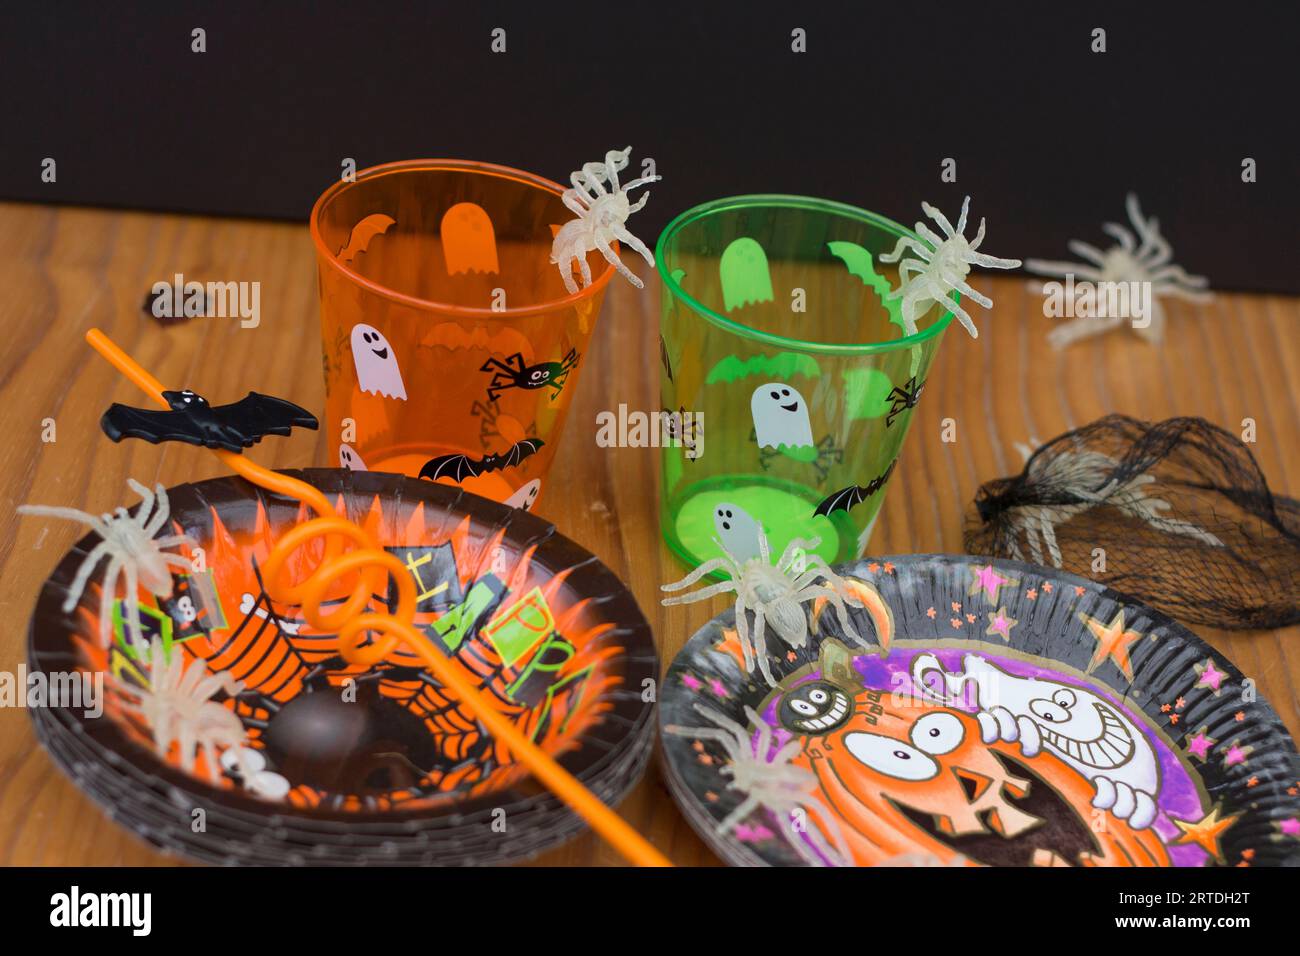 Araignées se rassemblant à la fête à thème halloween sur la table le soir Banque D'Images